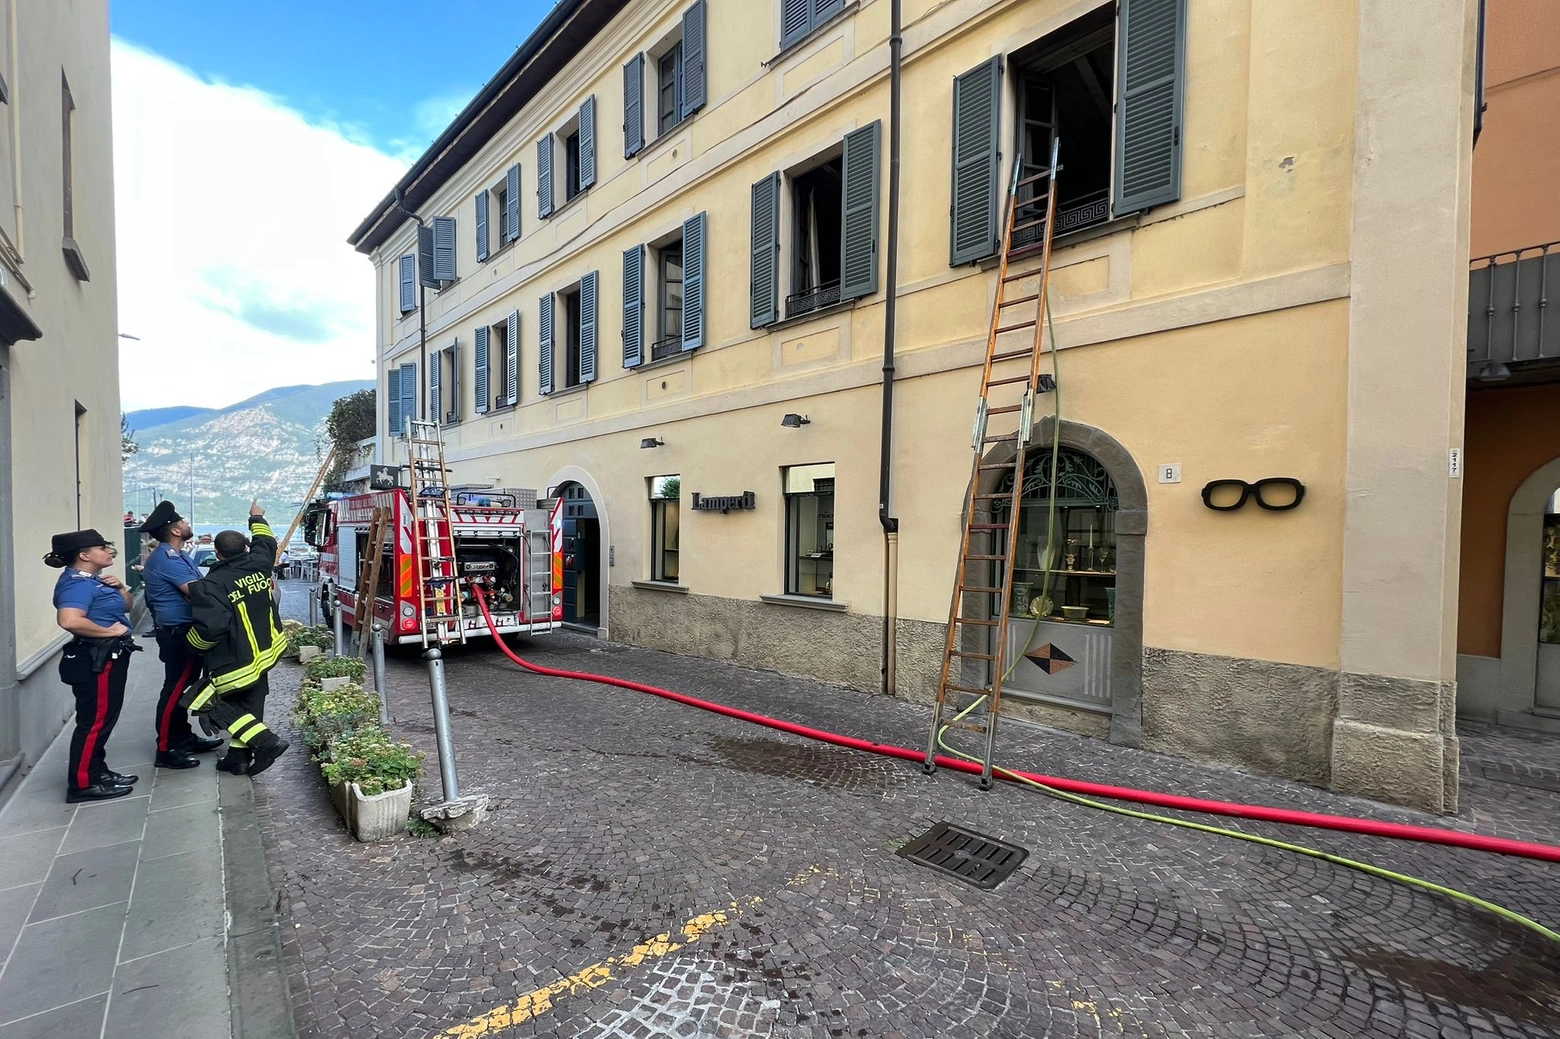 L'intervent dei vigili del fuoco per spegnere l'incendio nell'appartamenti di via porto Oldofredi